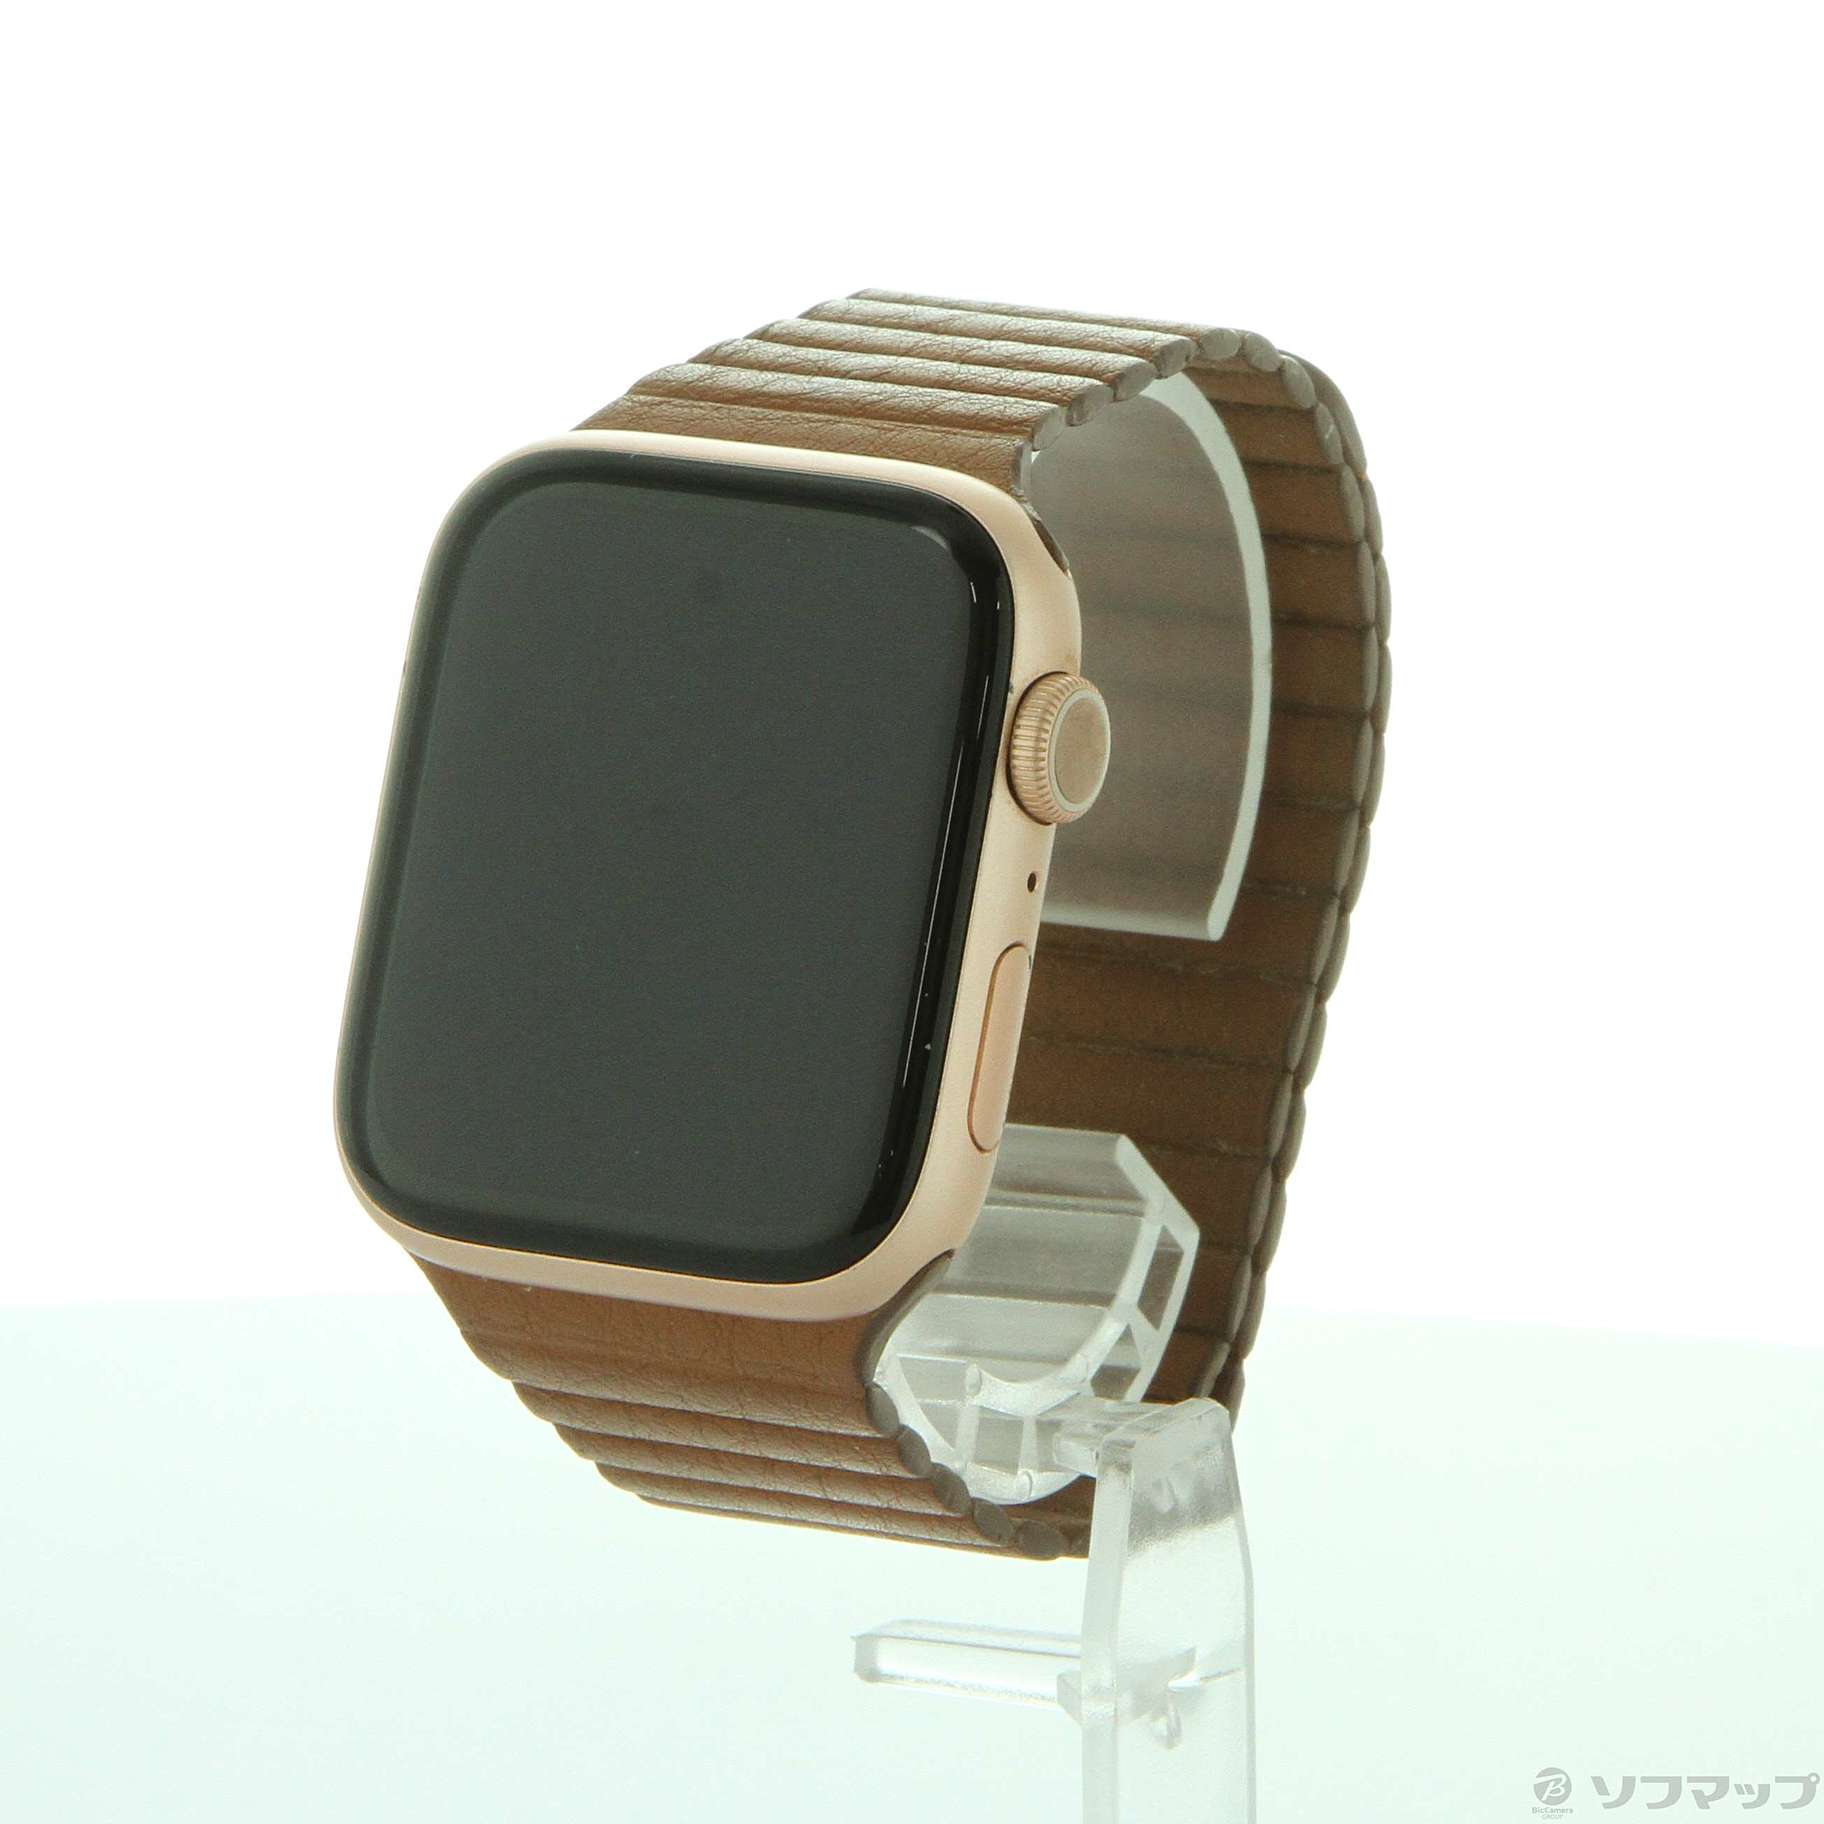 【44mm】Apple Watch Series 5 Gold Aluminum